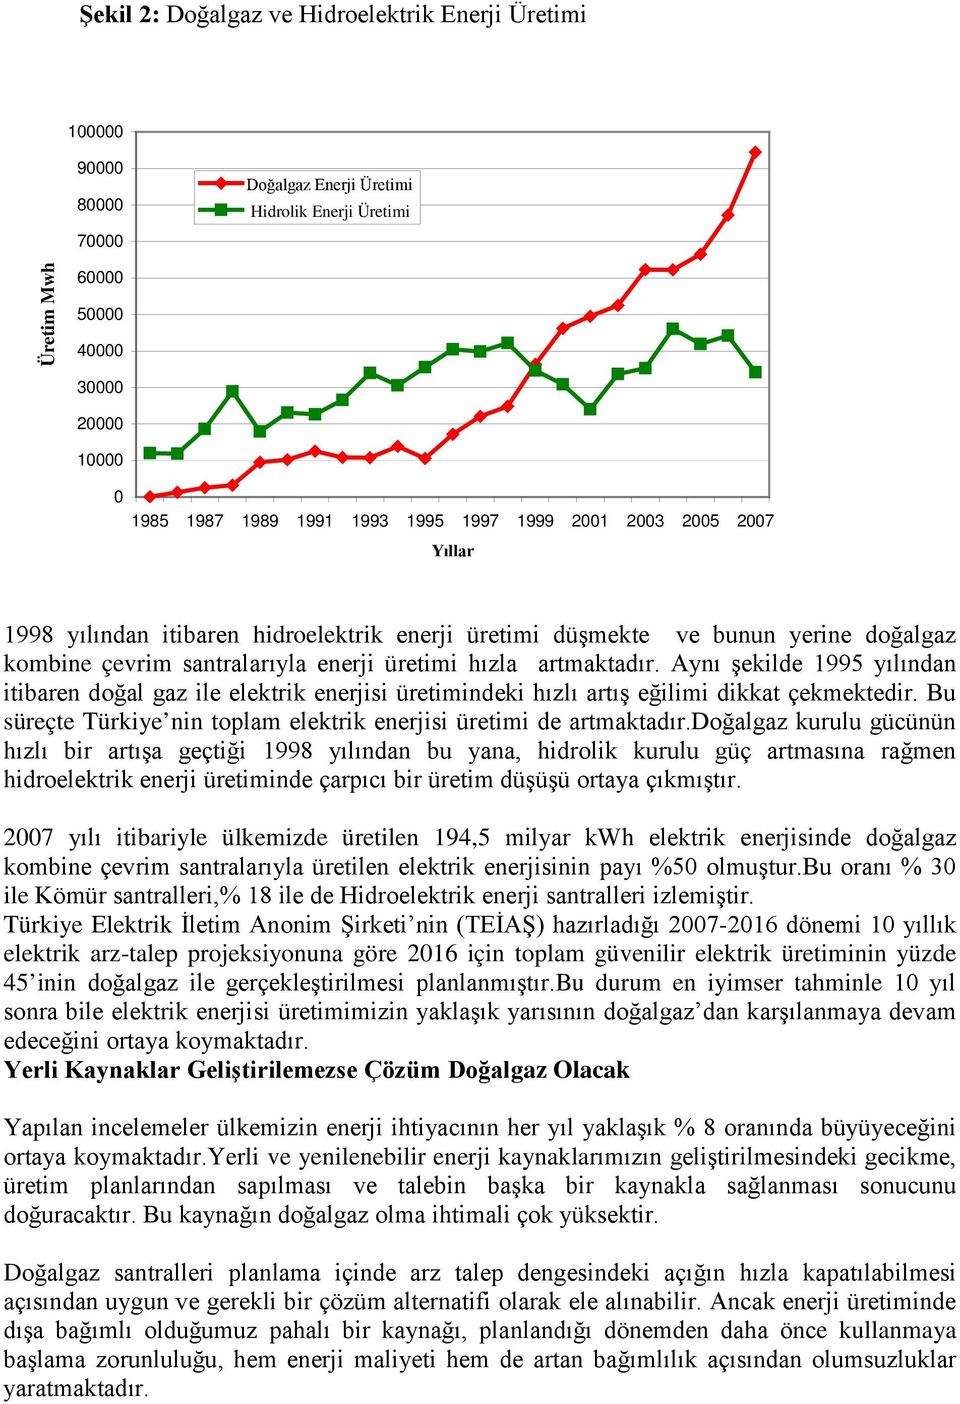 Aynı şekilde 1995 yılından itibaren doğal gaz ile elektrik enerjisi üretimindeki hızlı artış eğilimi dikkat çekmektedir. Bu süreçte Türkiye nin toplam elektrik enerjisi üretimi de artmaktadır.